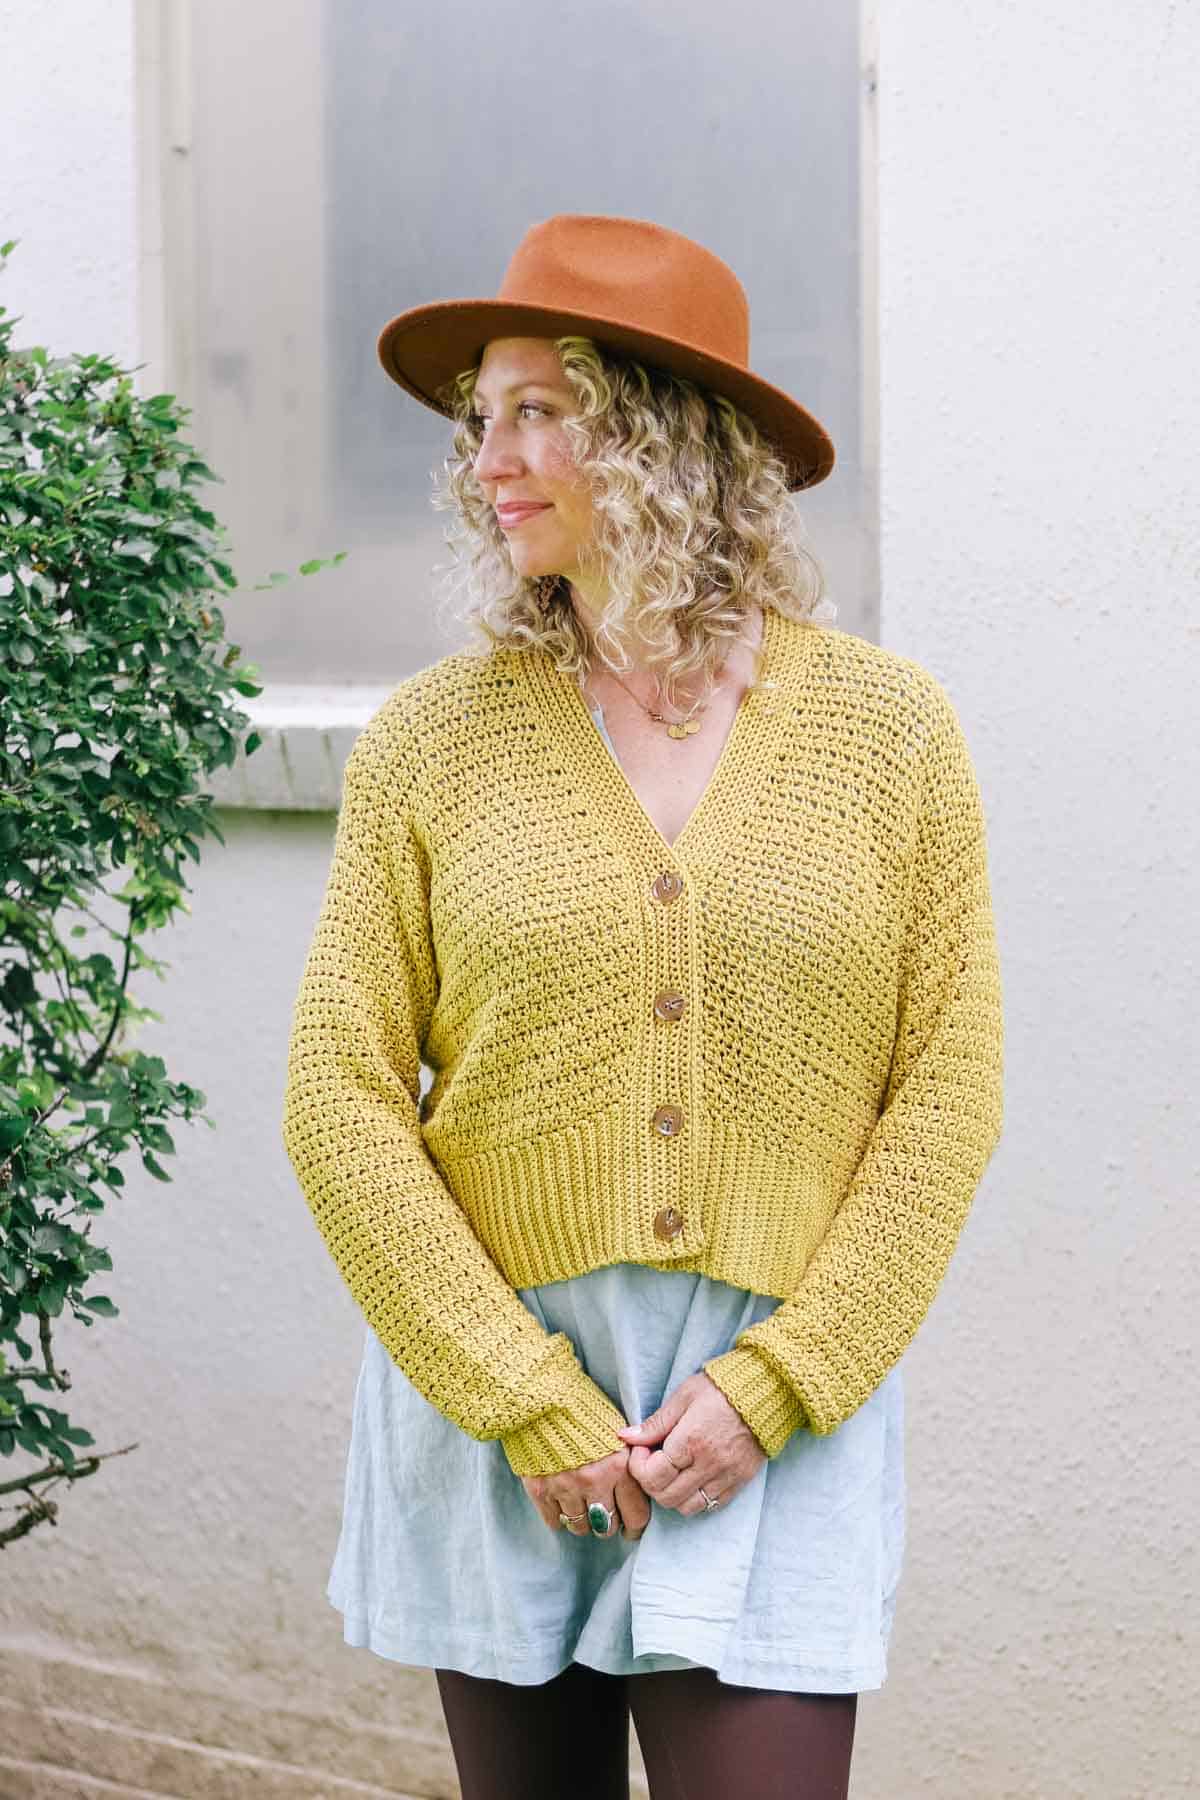 Woman wearing a yellow shorter crocheted cardigan.